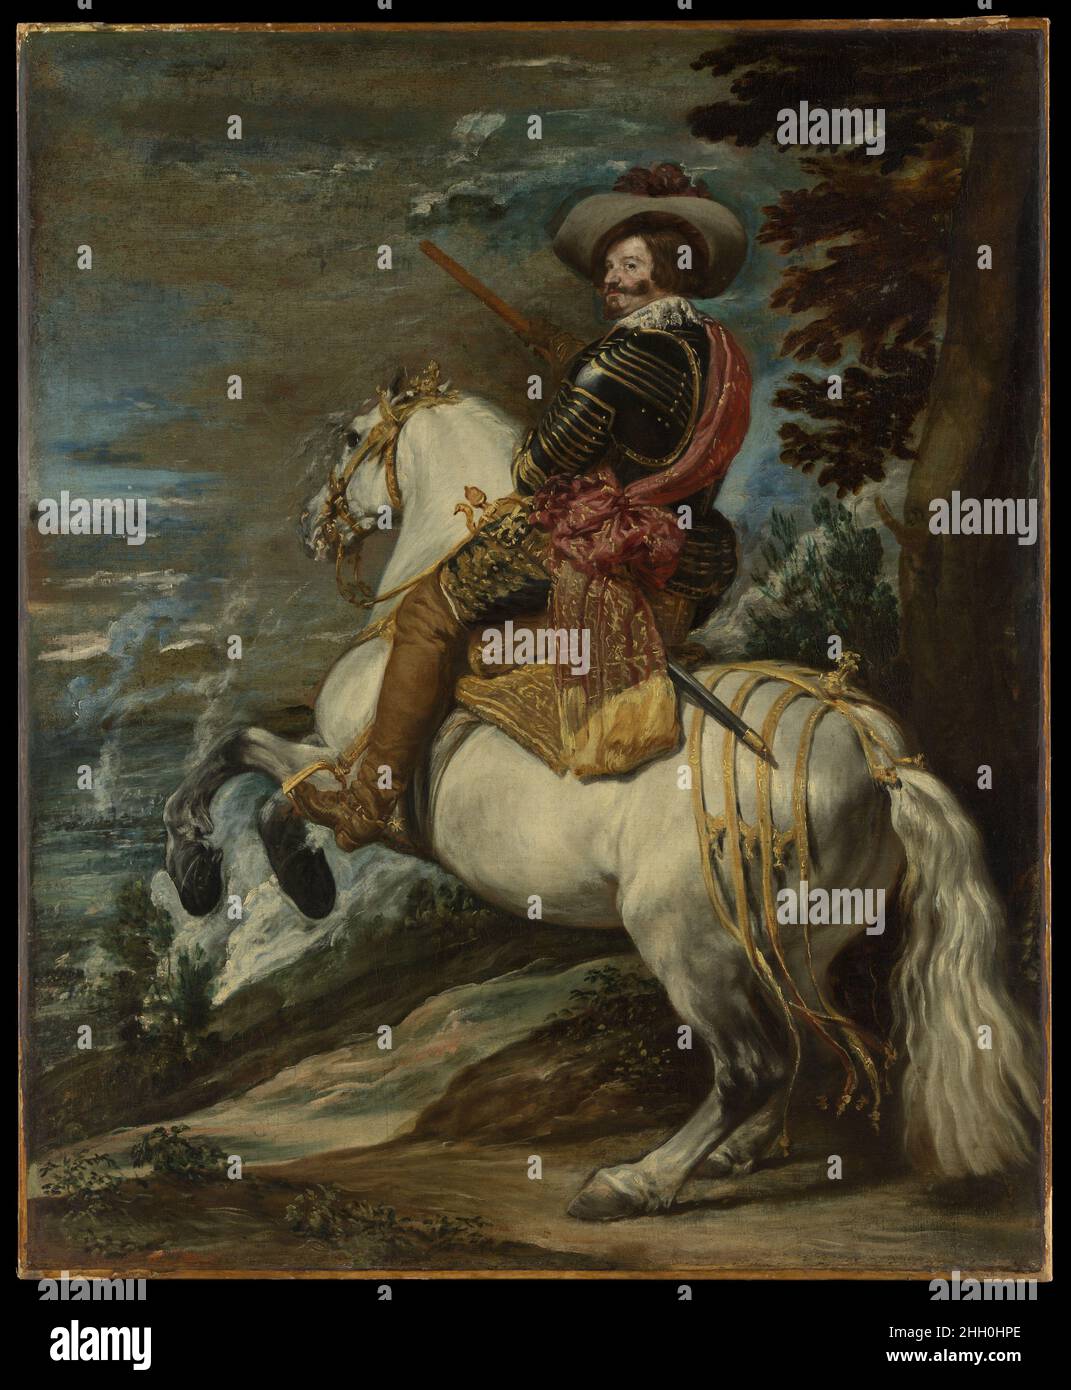 Don Gaspar de Guzmán (1587-1645), comte-duc d'Olivares ca.1636 ou plus tard attribué à Velázquez (Diego Rodríguez de Silva y Velázquez) Espagnol entre 1621 et 1643, le Comte-duc d’Olivares fut le puissant Premier ministre de Philip IV.Cette photo est soit un modèle préliminaire, soit une variante réduite d'un grand portrait équestre du comte-duke (Prado, Madrid), peint peut-être en célébration d'une victoire sur les Français à la ville frontalière de Fuenterrabía en 1638.En pleine armure et tenant un bâton, il est montré comme un commandant victorieux.Son cheval tient une position de dressage connue sous le nom de levade.th Banque D'Images